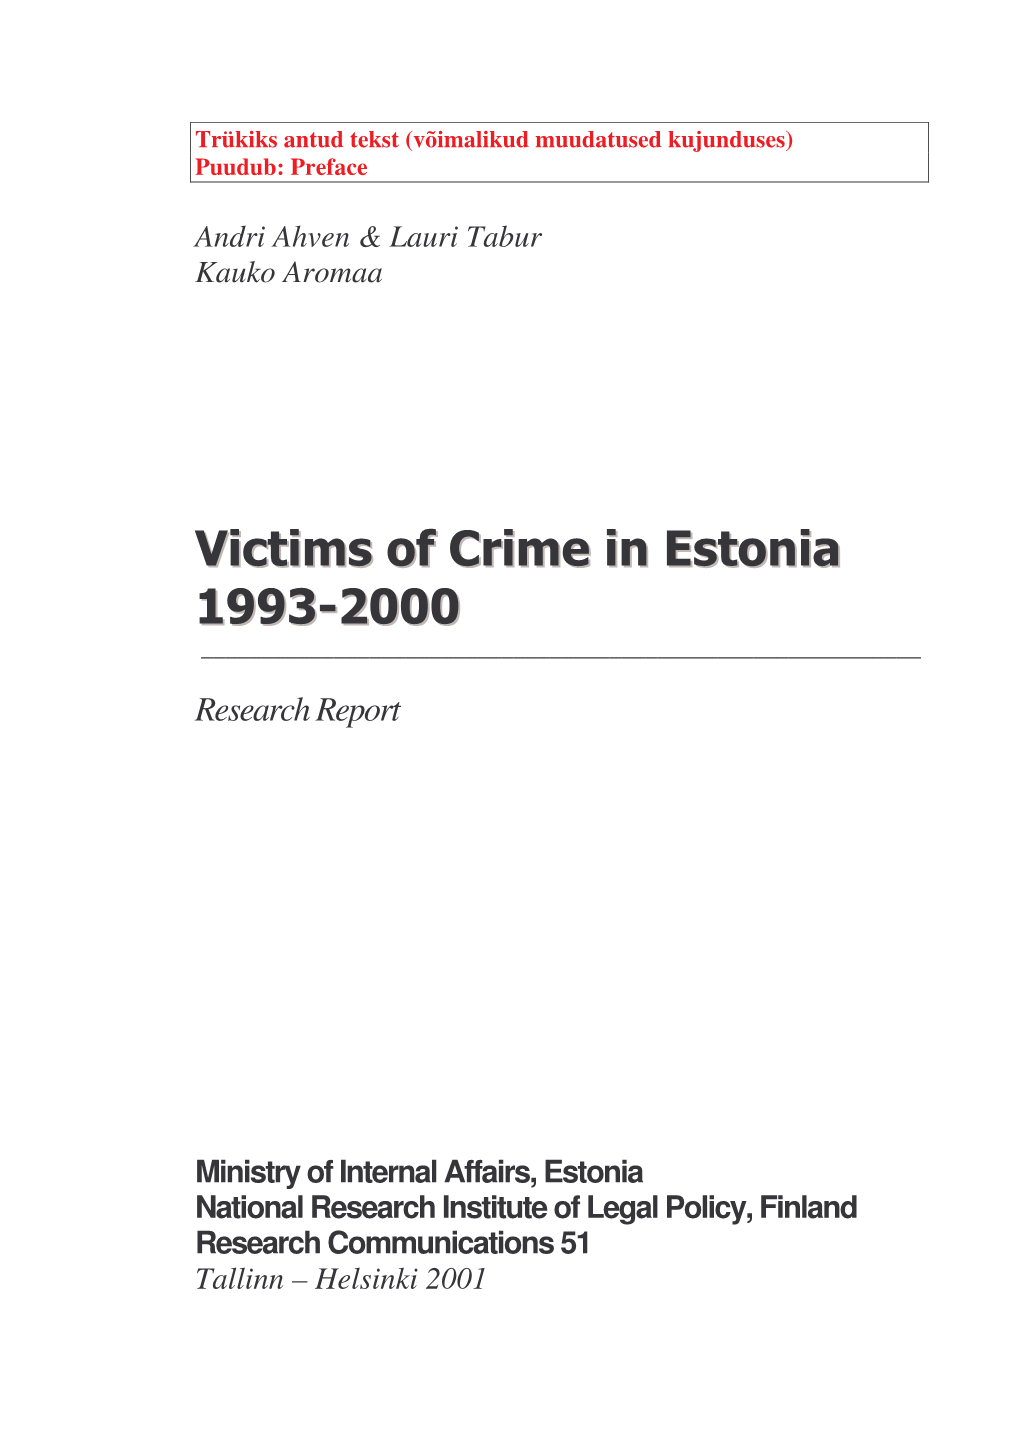 Victims of Crime in Estonia 1993-2000